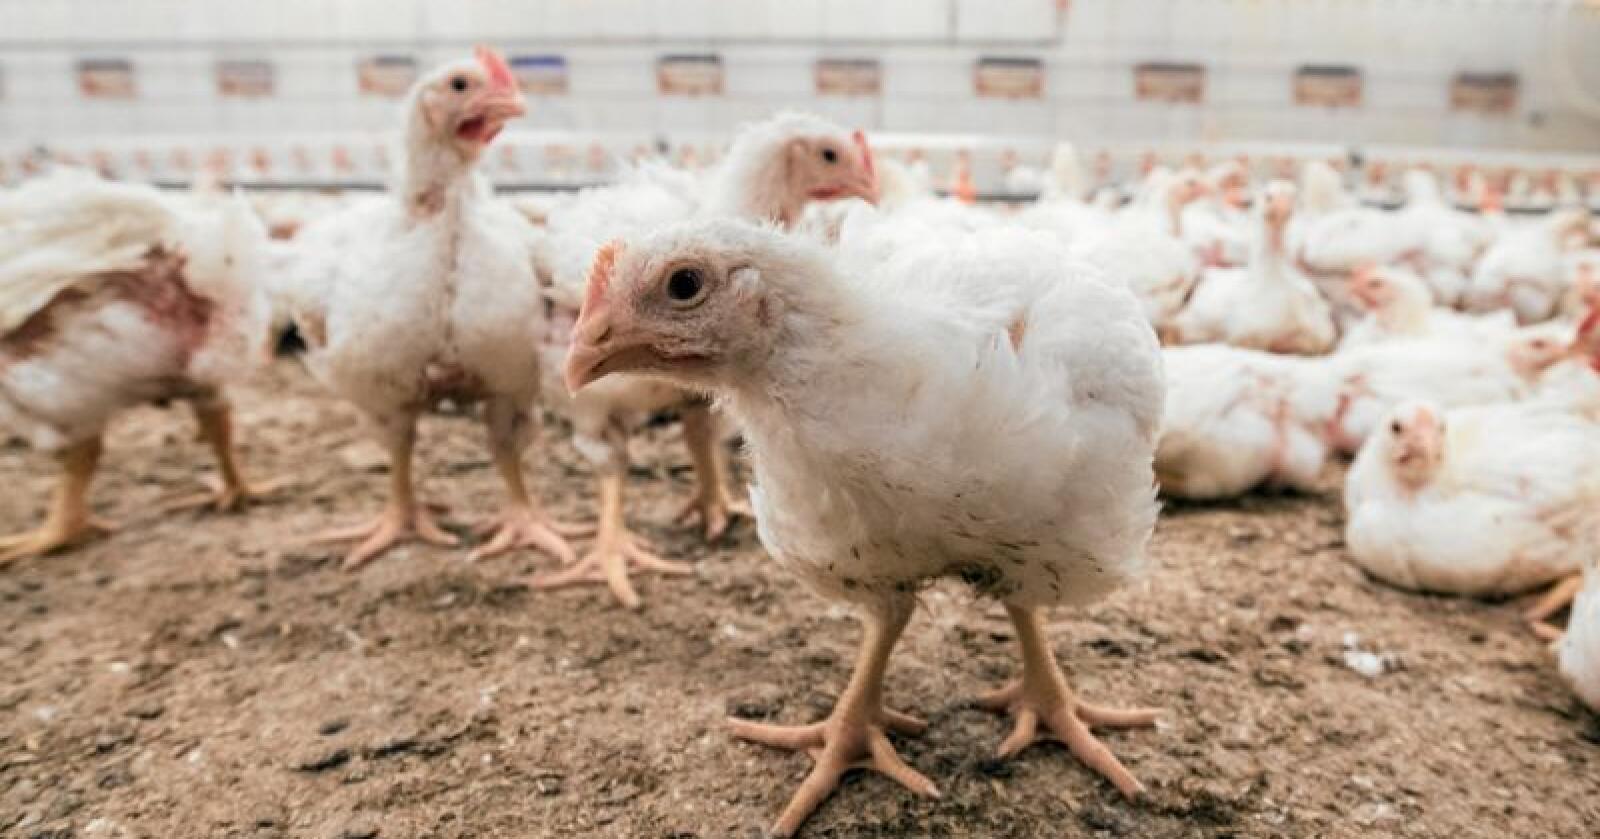 Titusenvis av kyllinger ble slaktet etter salmonellautbrudd sør i Sverige. Illustrasjonsfoto: Vidar Sandnes